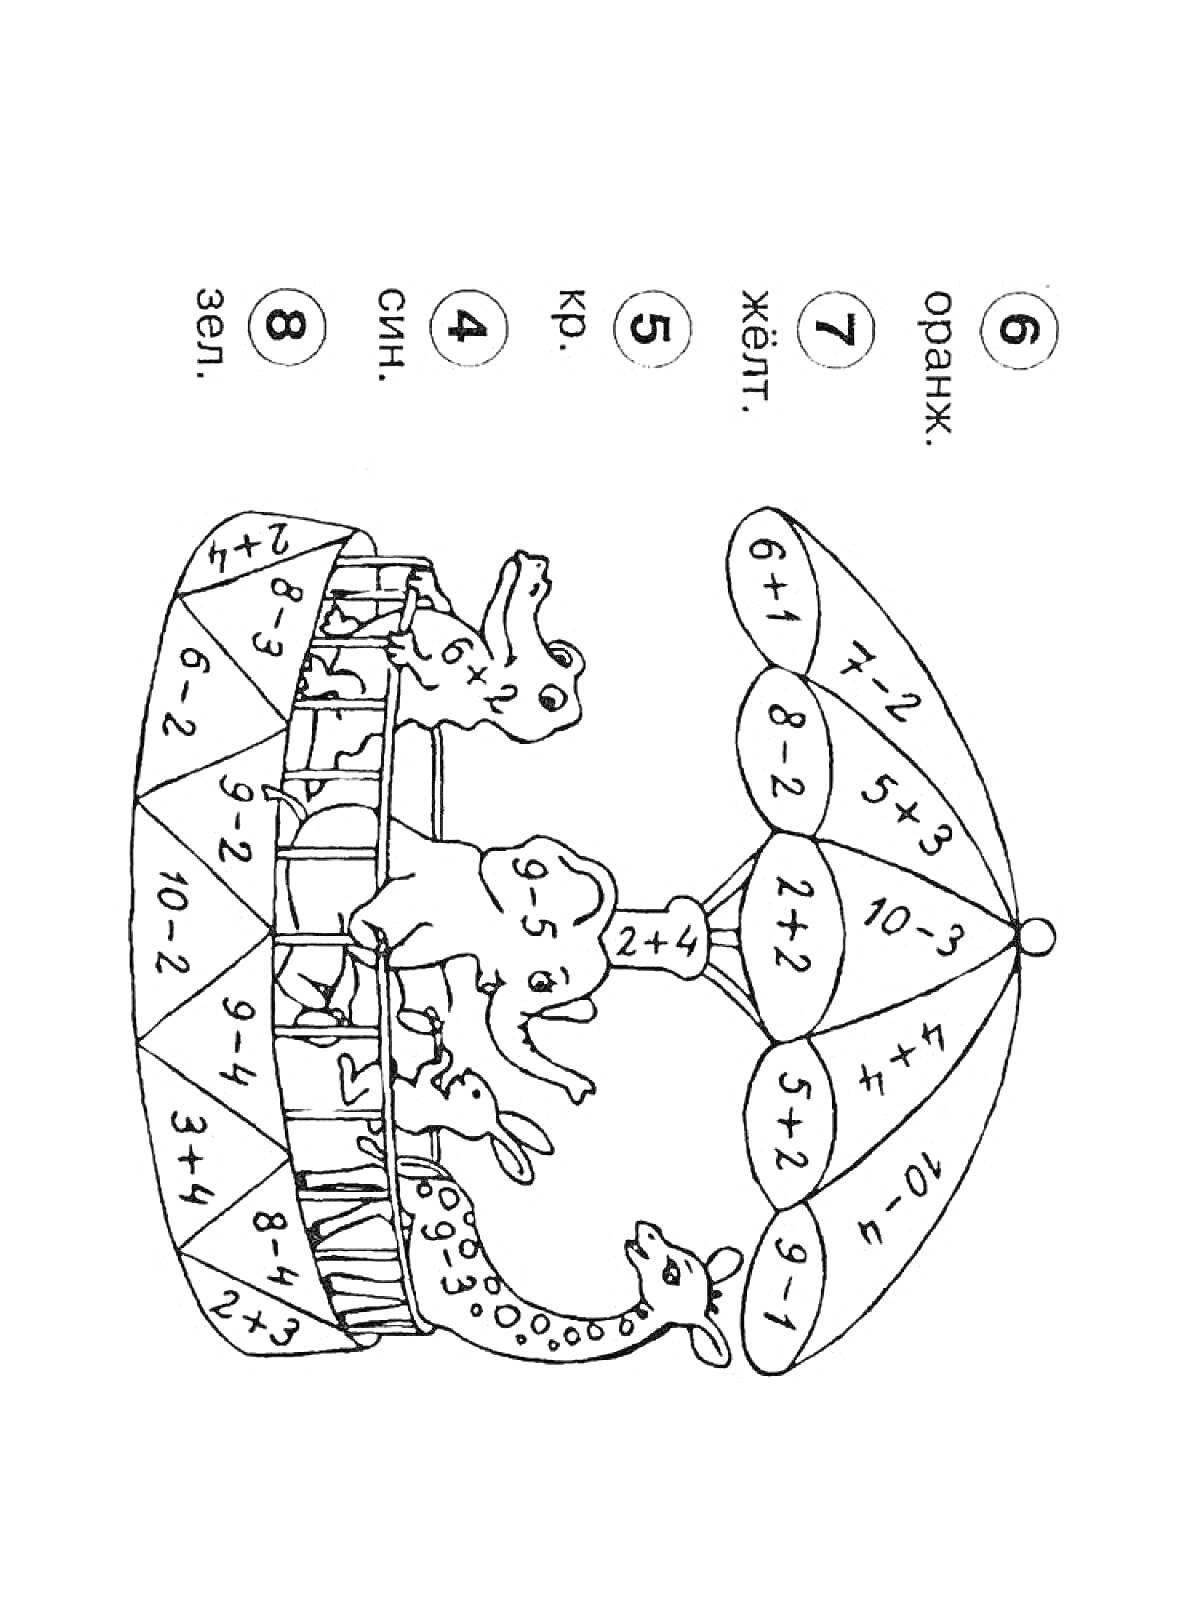 Раскраска Карусель с жирафами, слоном и львом под зонтиком, расшивка зонтика и основания с математическими примерами